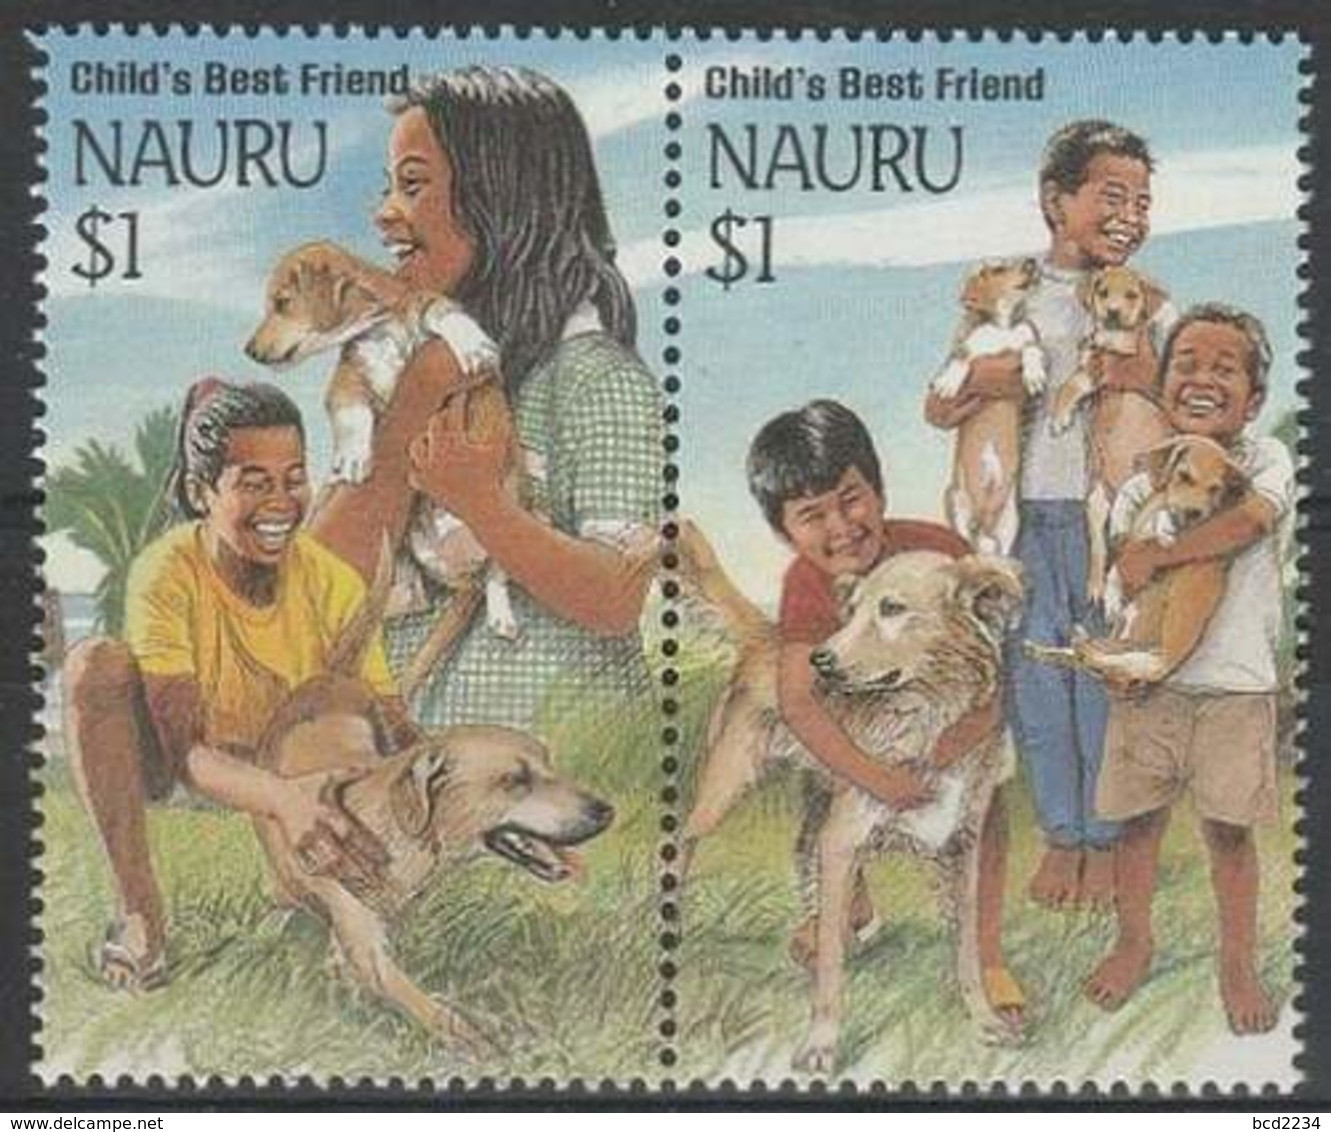 NAURU 1994 CHILD'S BEST FRIEND DOGS NHM MINT CHIENS CHIEN HUND PERROS DOG CHILDREN CANI PAIR - Nauru